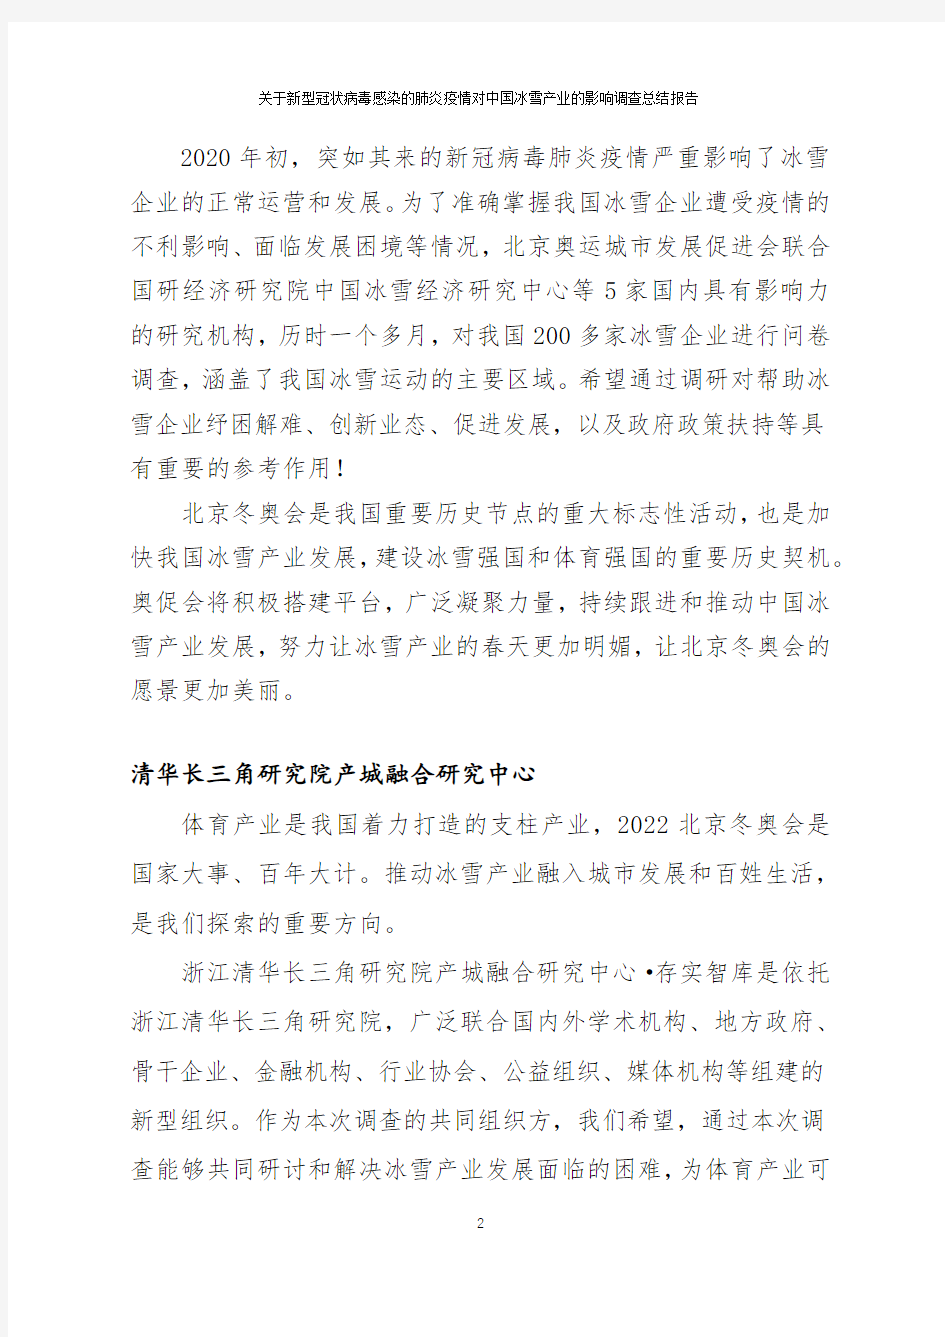 【精品报告】新.冠.疫.情.对中国冰雪产业的影响报告-北京奥运城市发展促进会